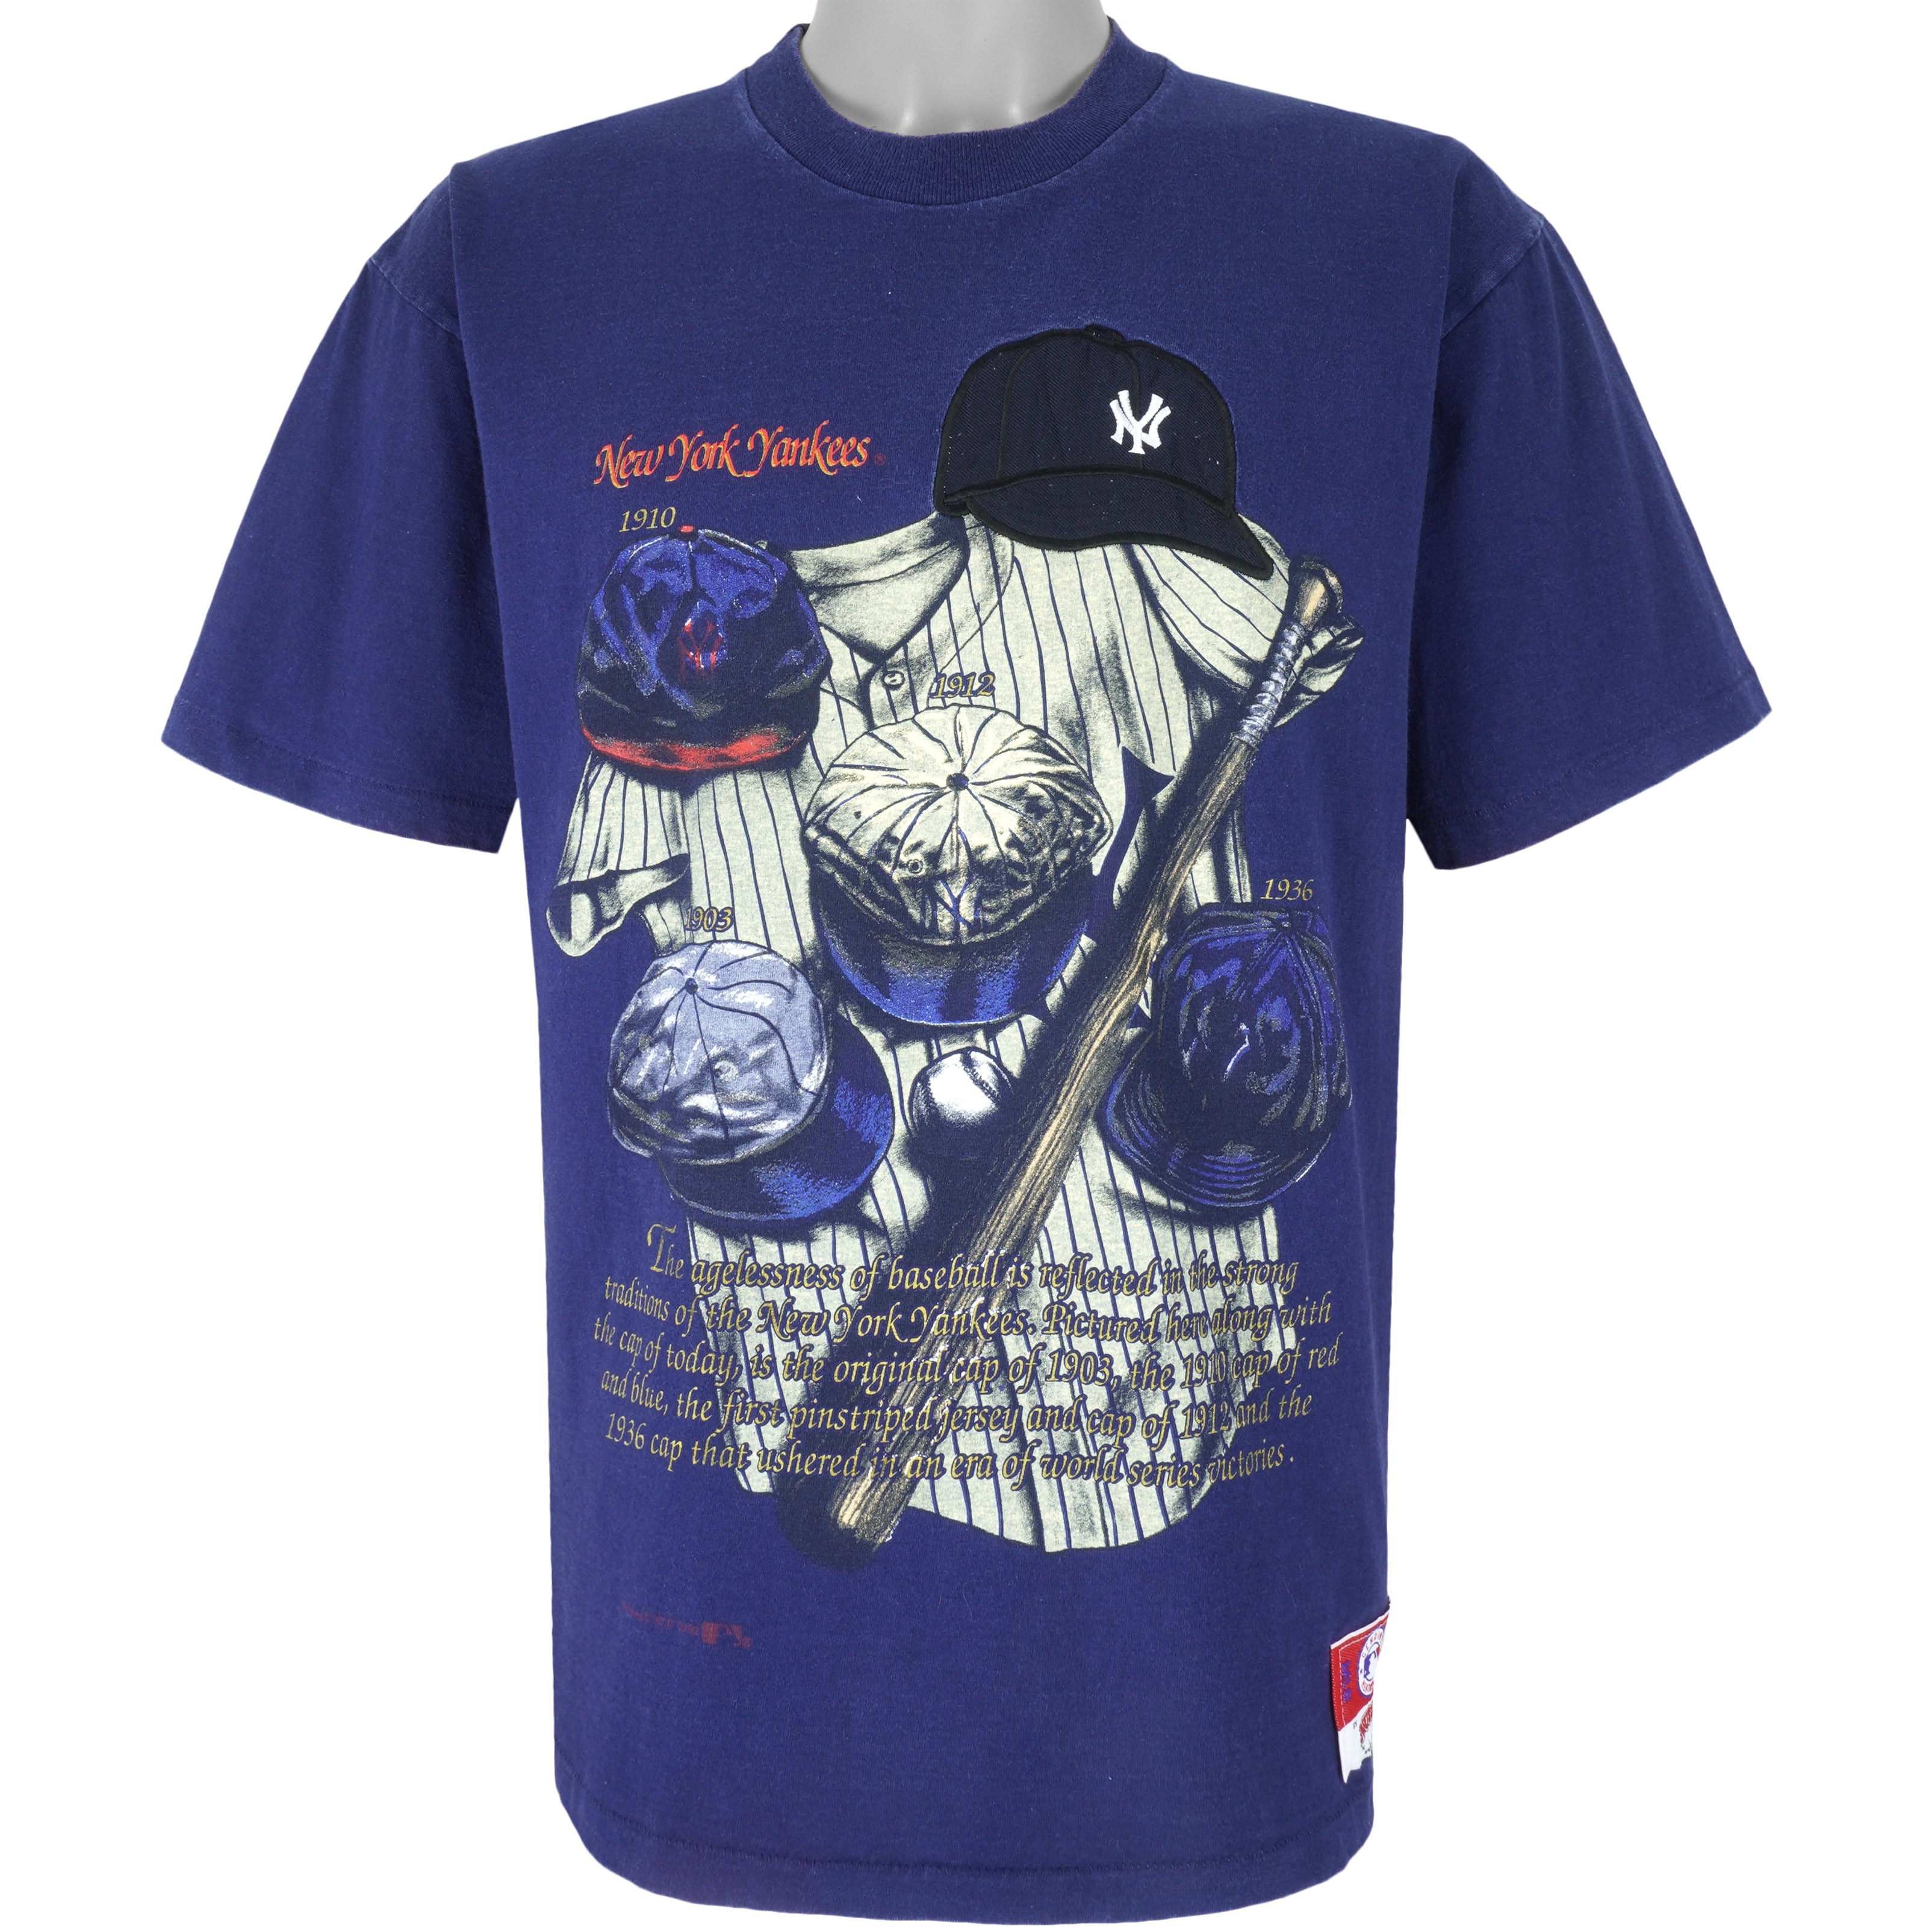 VTG Starter Genuine Merchandise 80's NY Yankees Blue Red Baseball